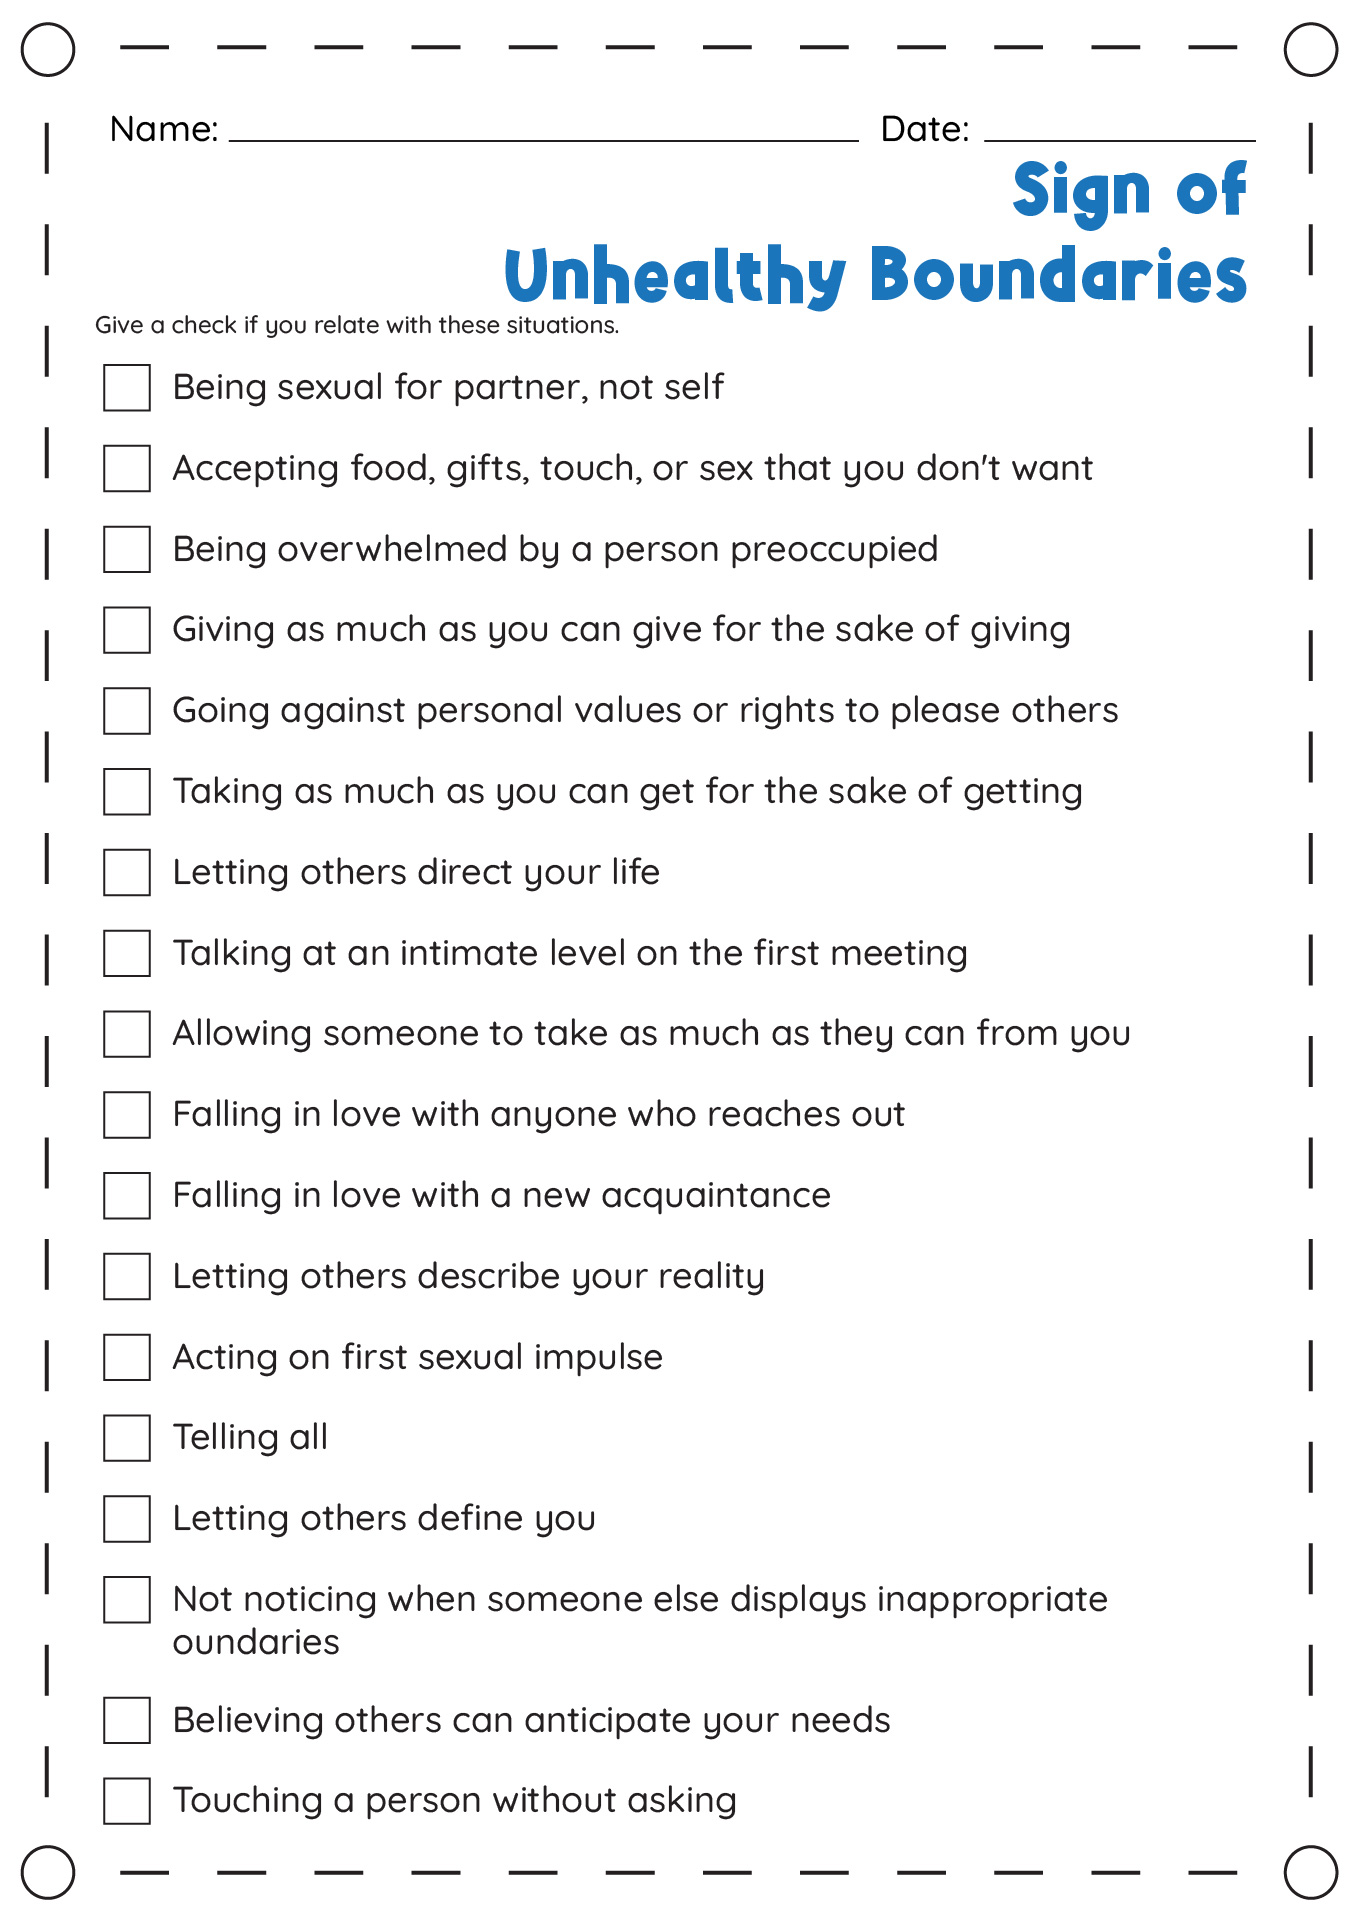 Signs of Unhealthy Boundaries Worksheet